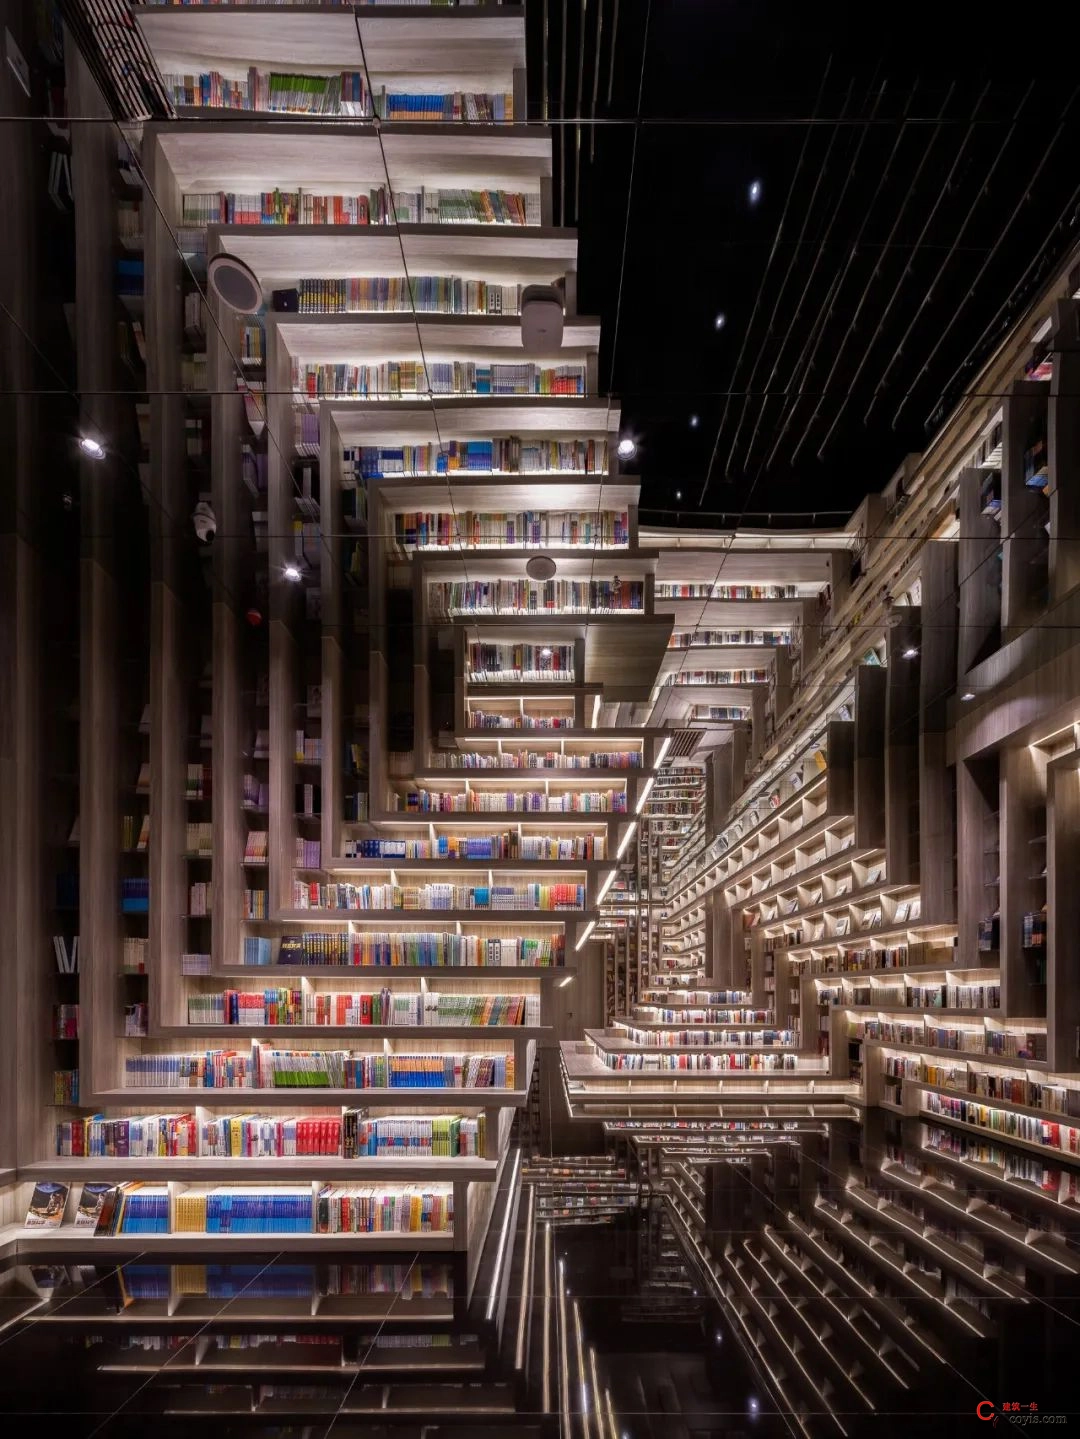 斐波影院X鐘書閣丨一家藏在書店里的電影院，打造出了文藝愛好者的天堂 / 唯想國際